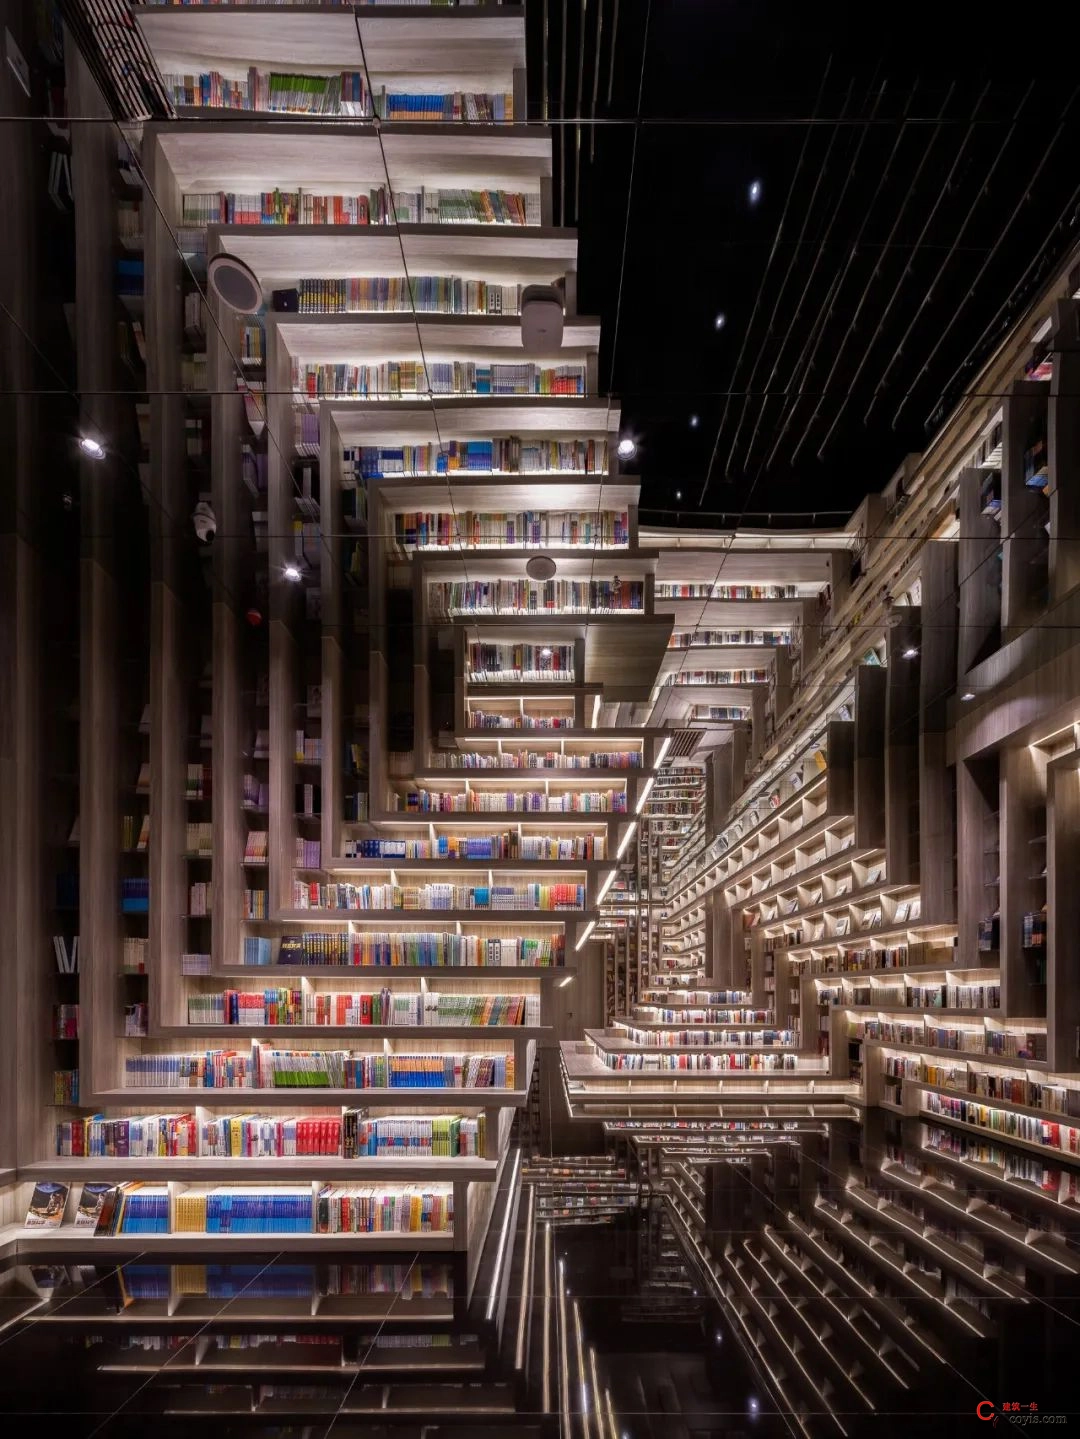 斐波影院X鐘書閣丨一家藏在書店里的電影院，打造出了文藝愛好者的天堂 / 唯想國際